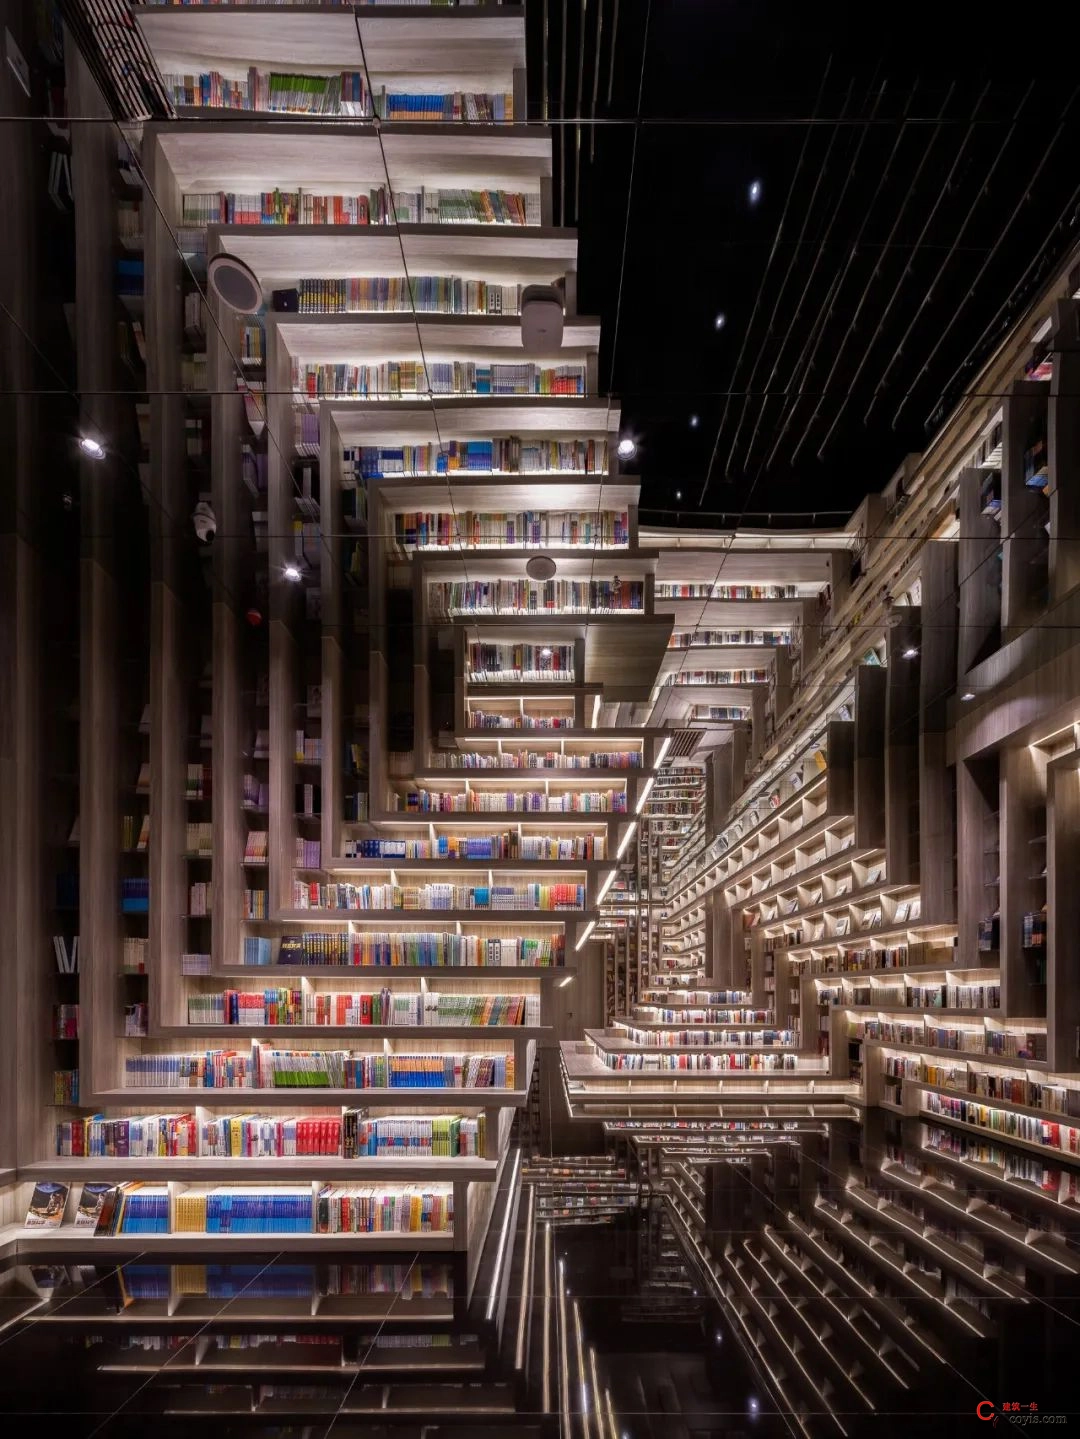 斐波影院X鐘書閣丨一家藏在書店里的電影院，打造出了文藝愛好者的天堂 / 唯想國際